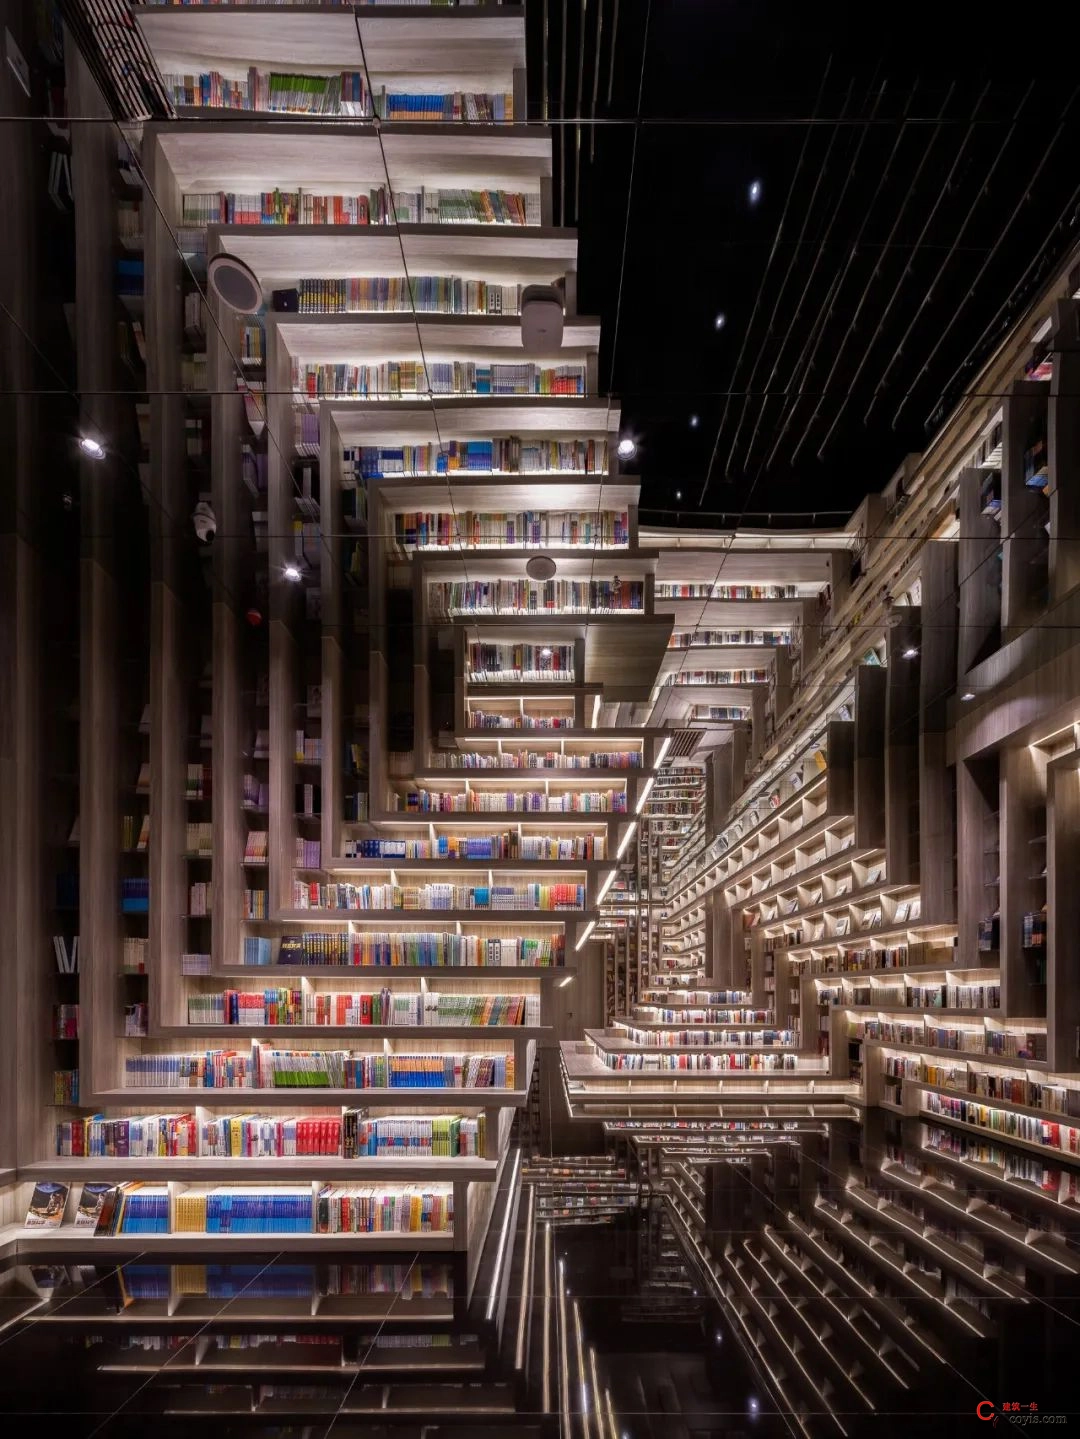 斐波影院X鐘書閣丨一家藏在書店里的電影院，打造出了文藝愛好者的天堂 / 唯想國際